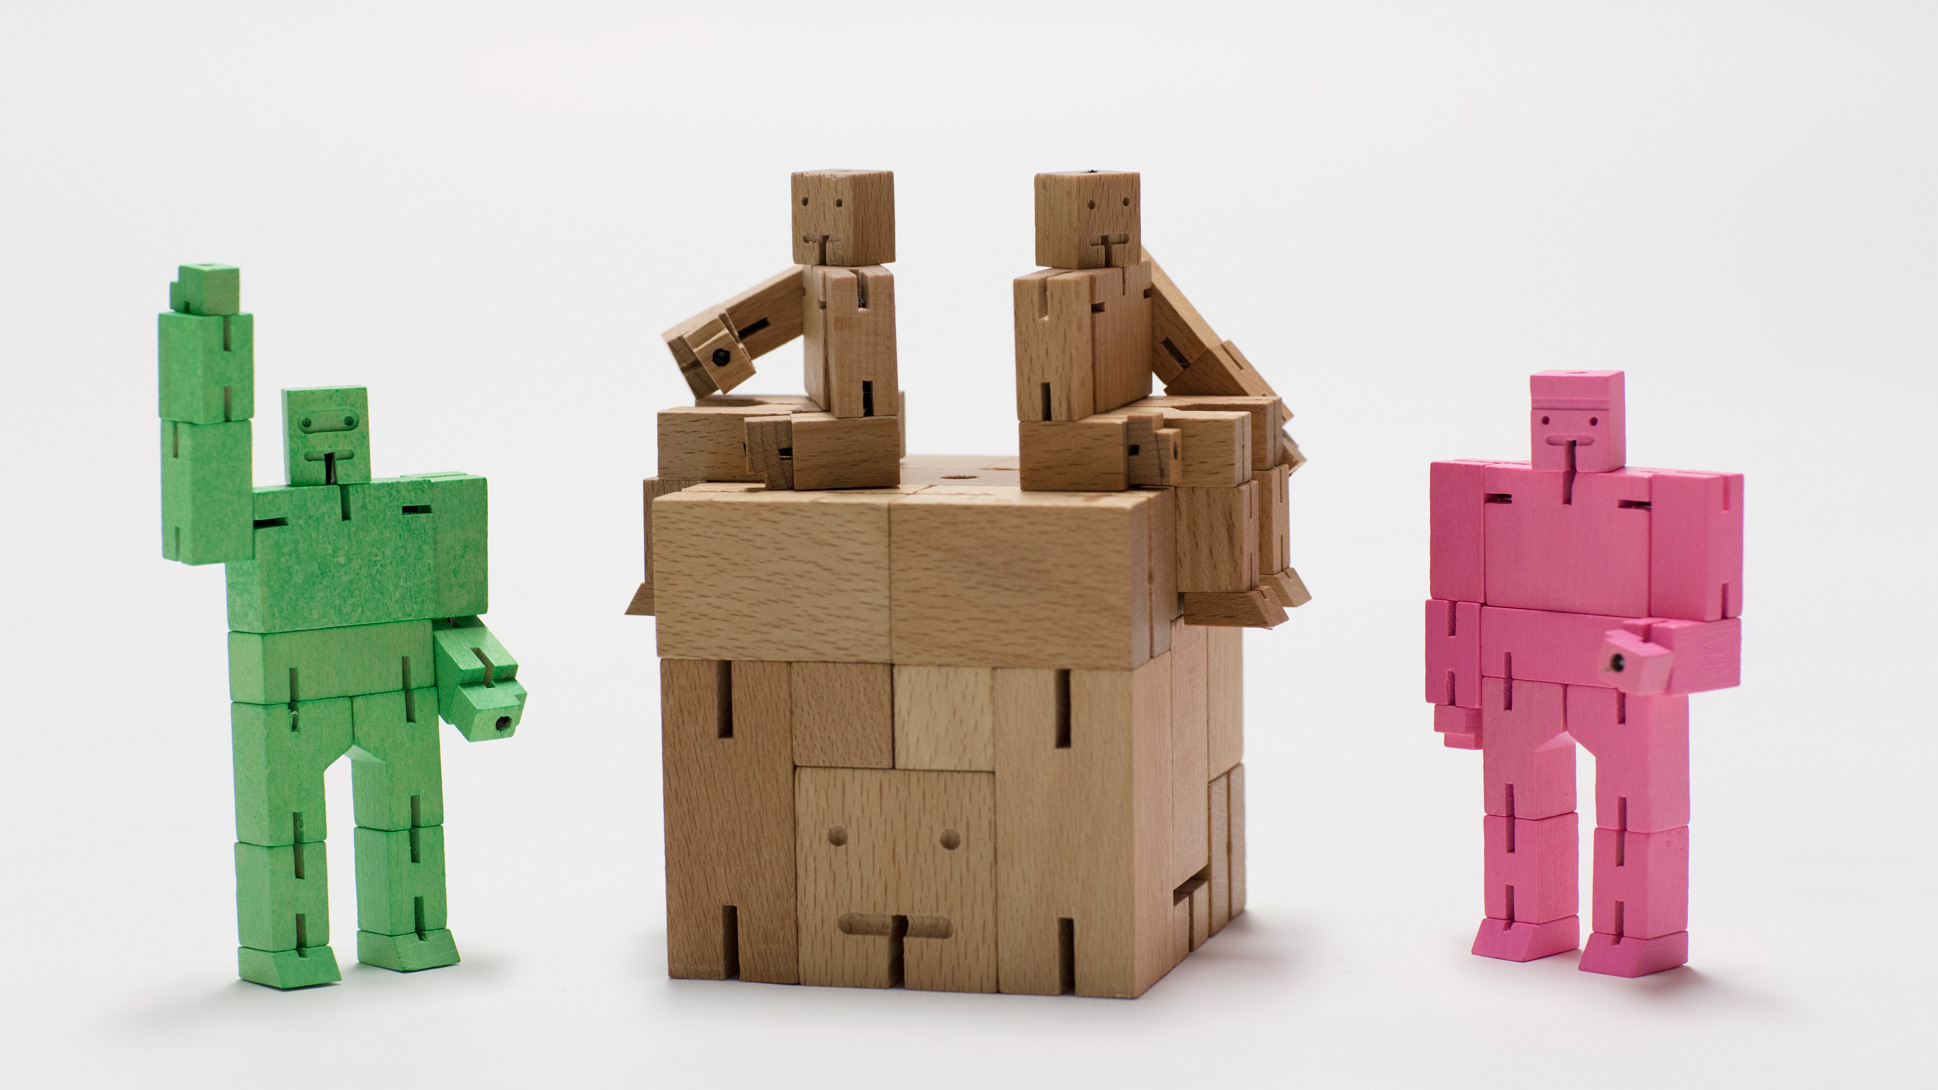 Cubebot by David Weeks